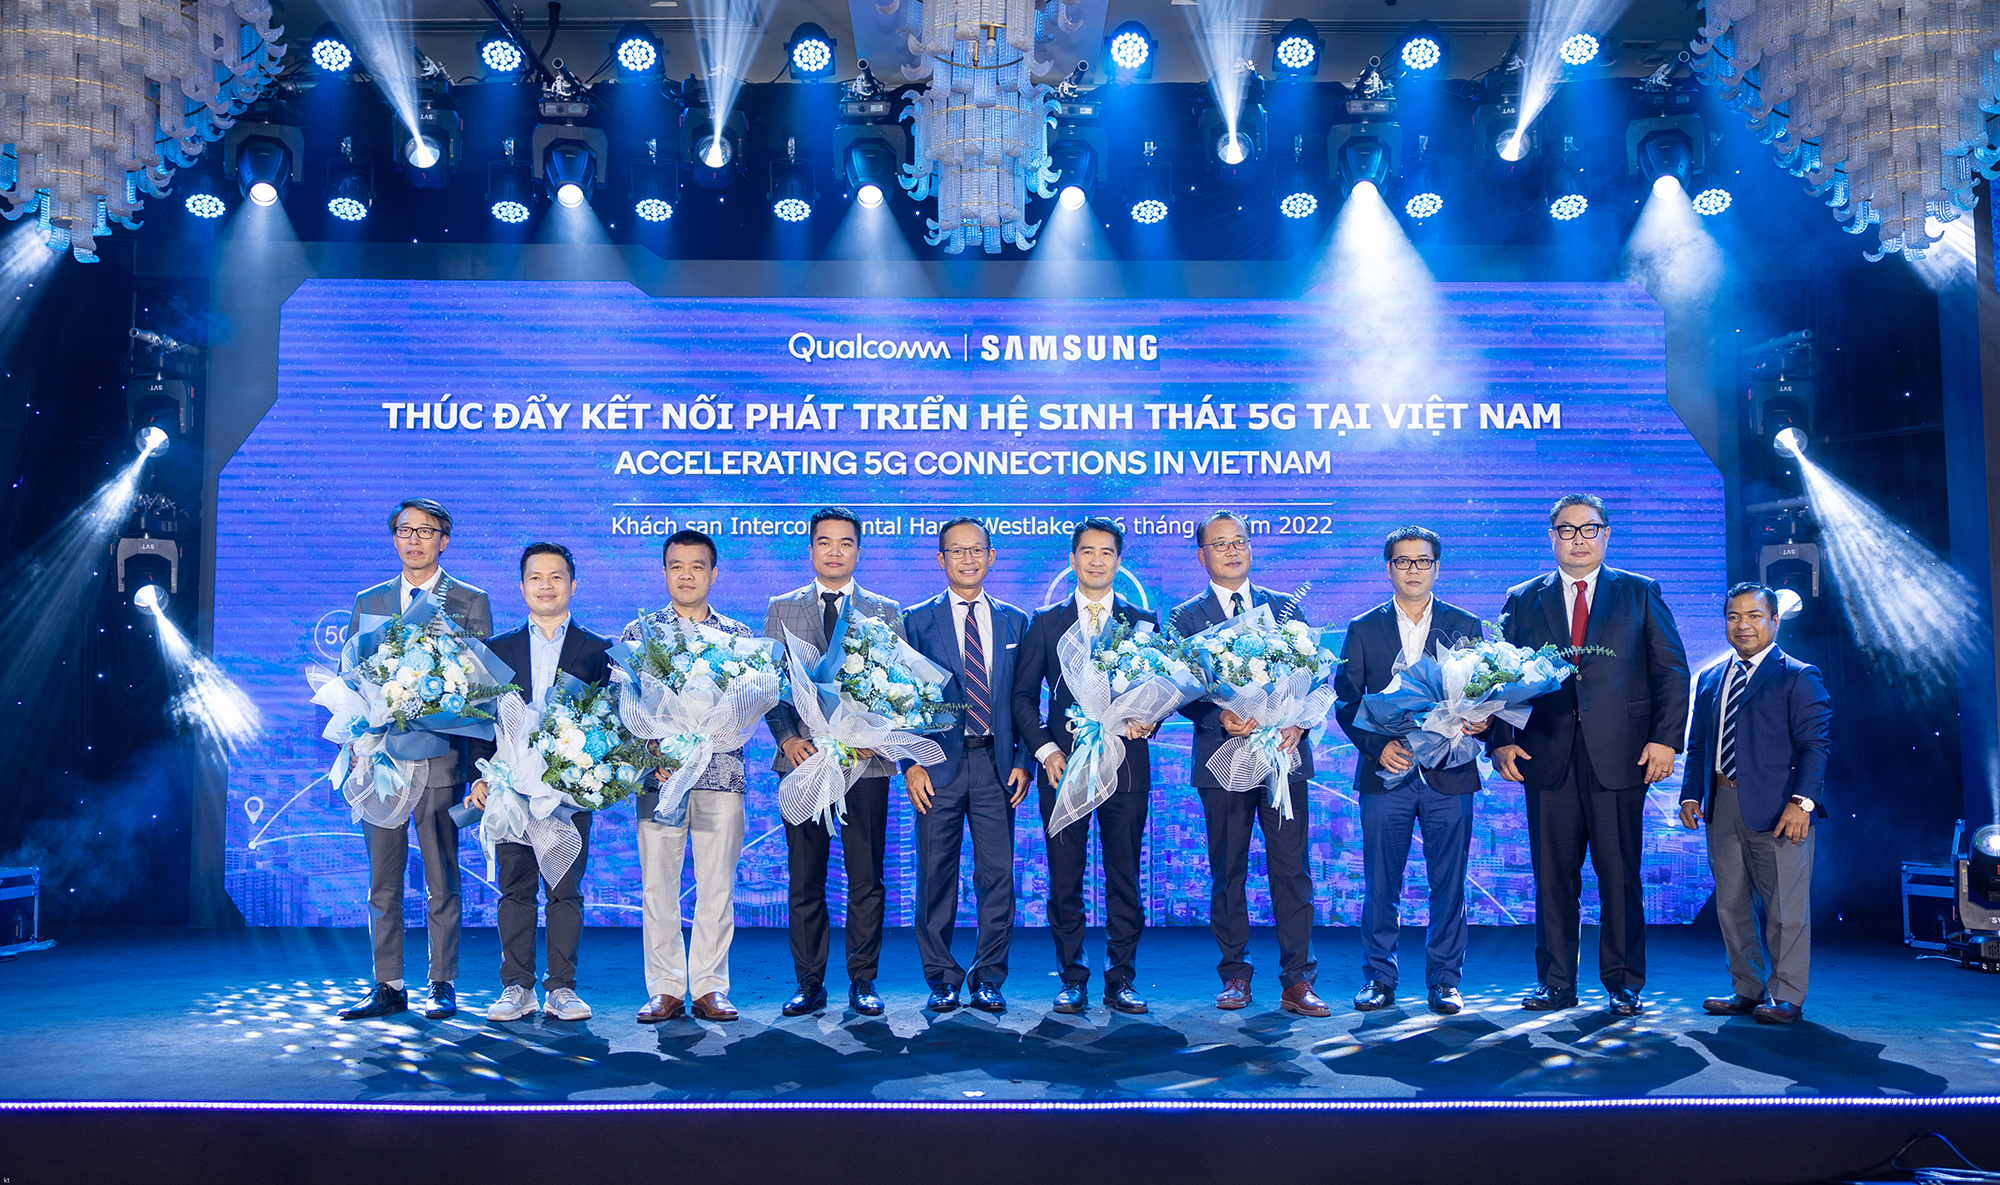 Qualcomm và Samsung dẫn đầu trong việc thúc đẩy 5G tại Việt Nam - Ảnh 1.